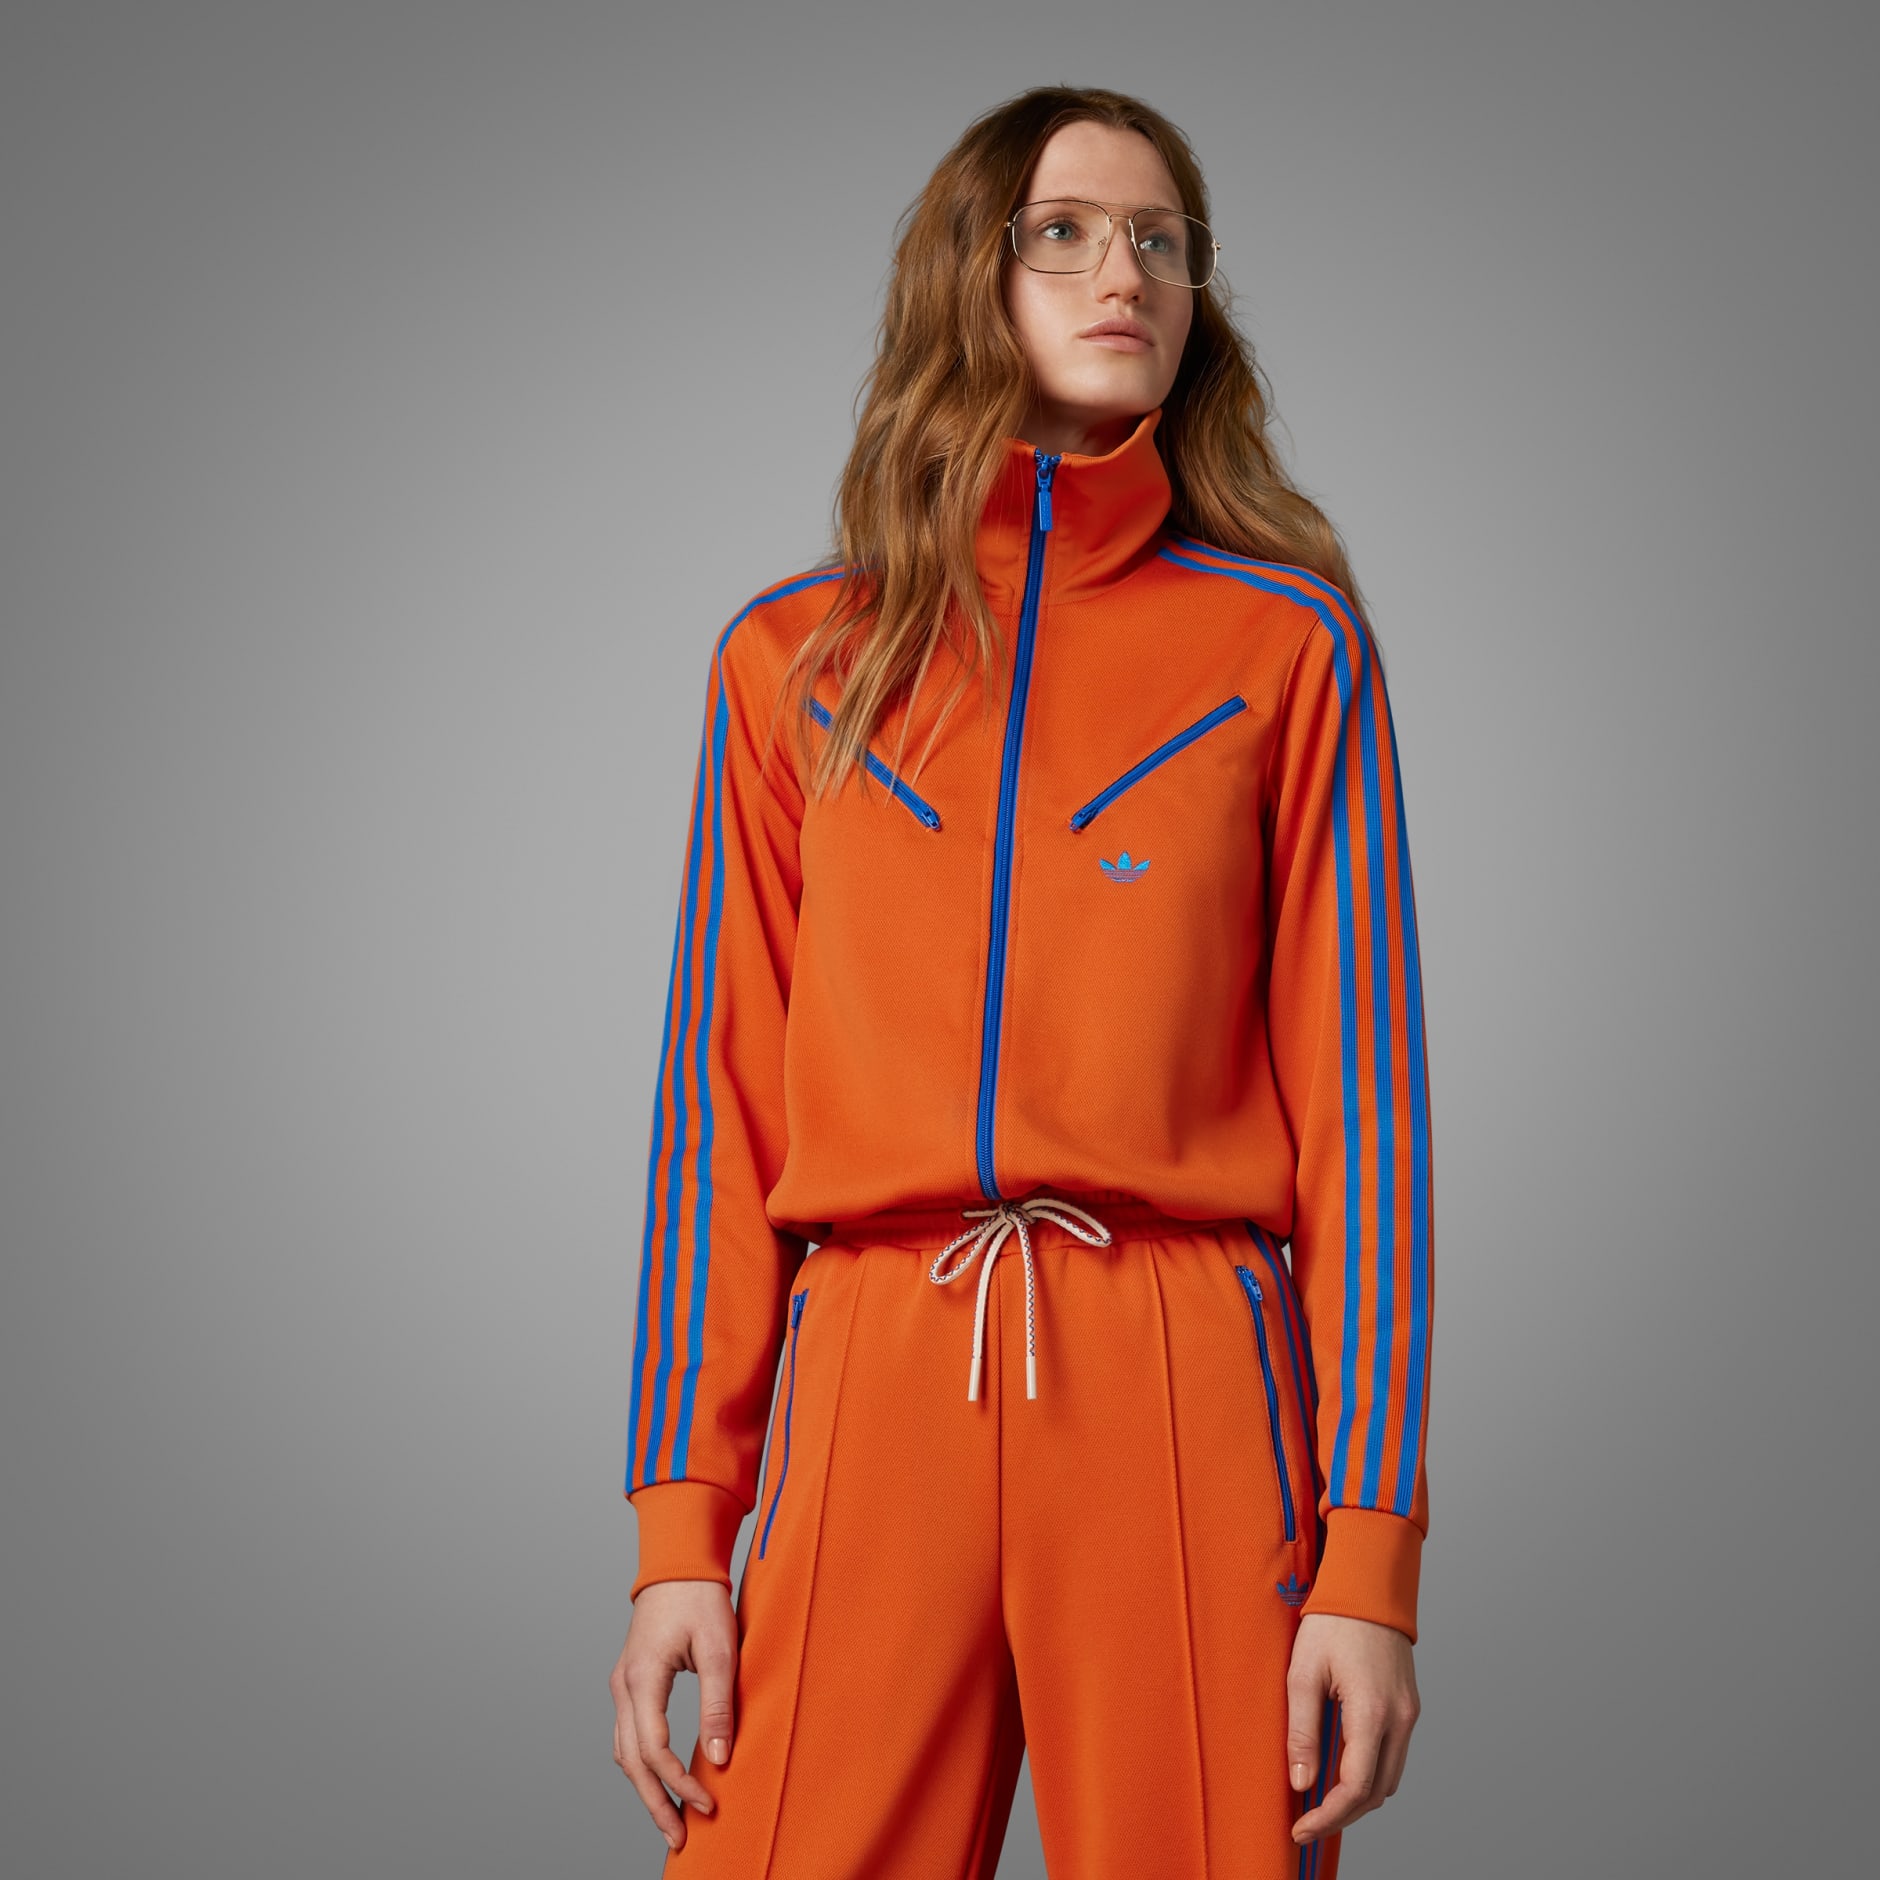 Women's Clothing - Adicolor 70s Montreal Track Top - Orange 